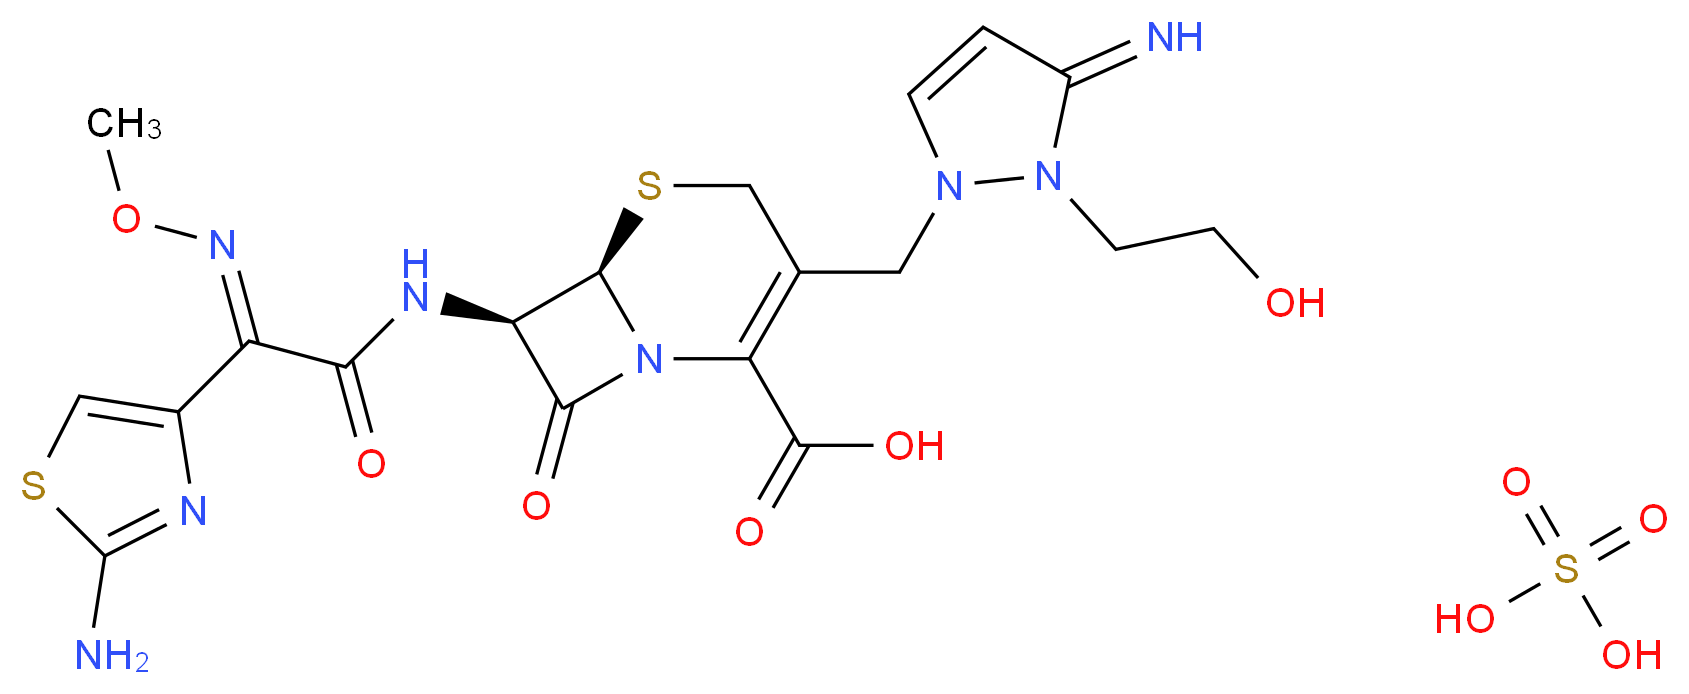 Cefoselis sulfate_Molecular_structure_CAS_122841-12-7)